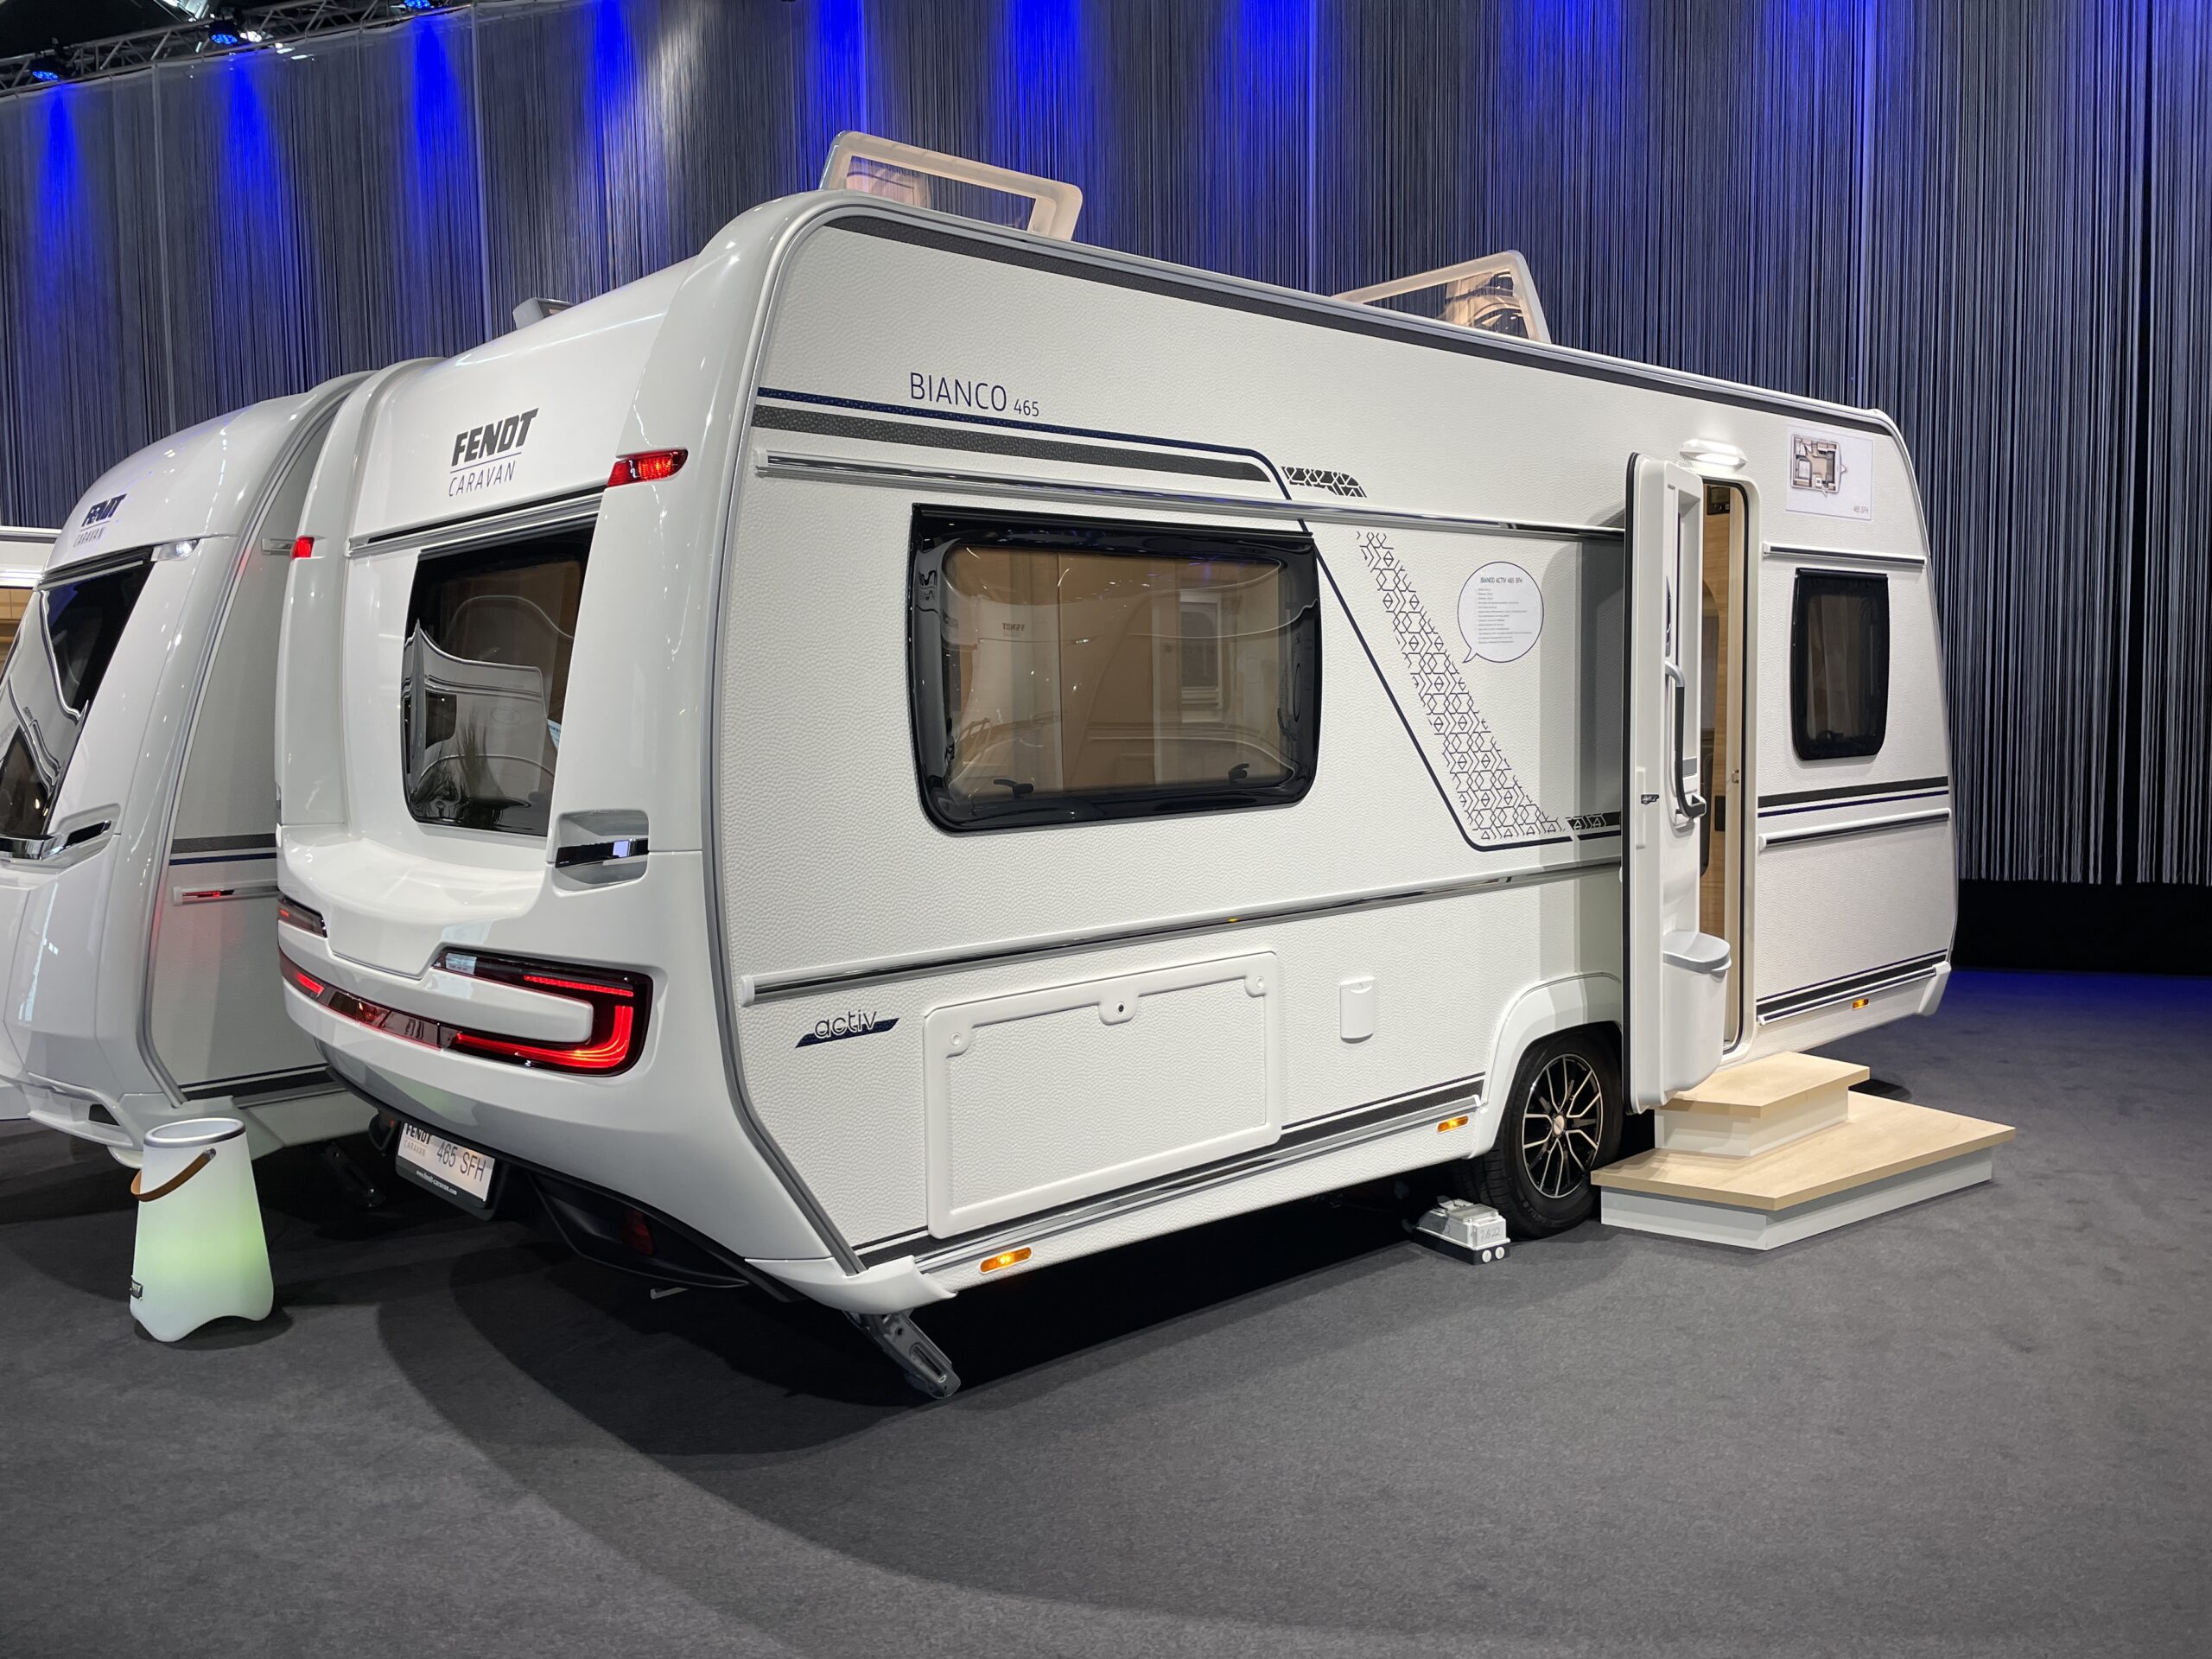 Fendt caravans 2023 Bianco